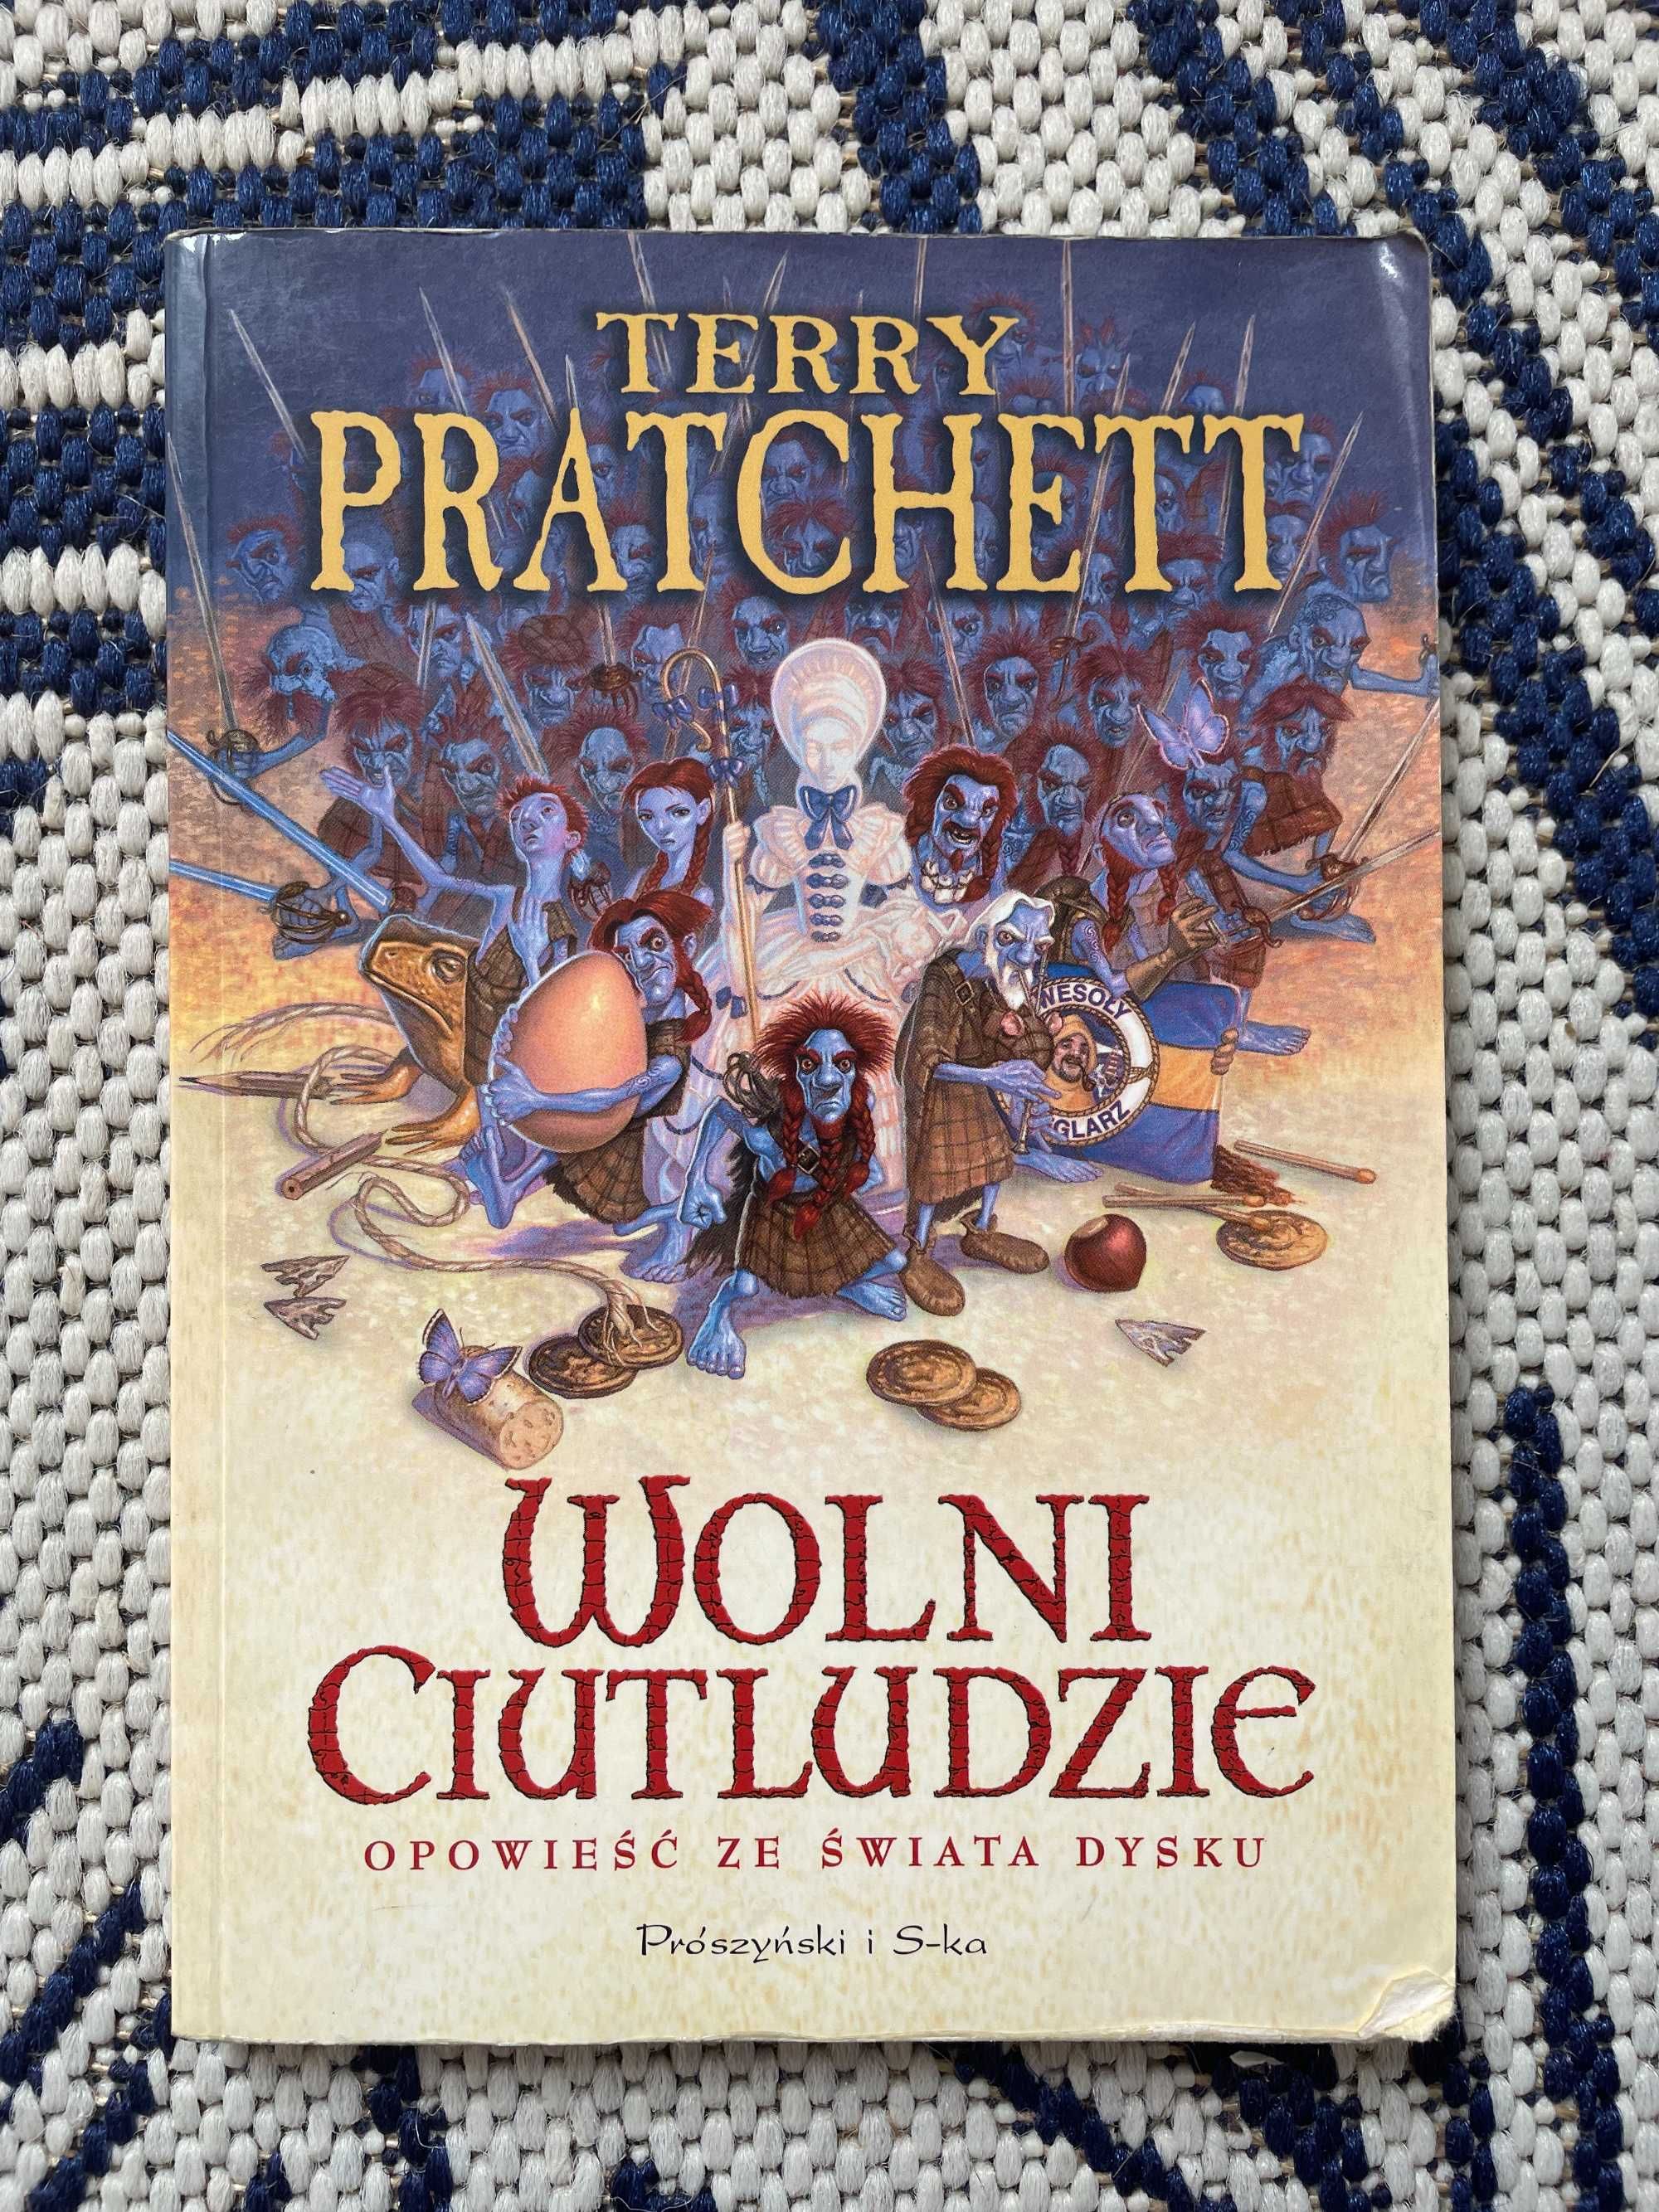 Terry Pratchett - "Wolni ciutludzie" - Prószyński i S-ka